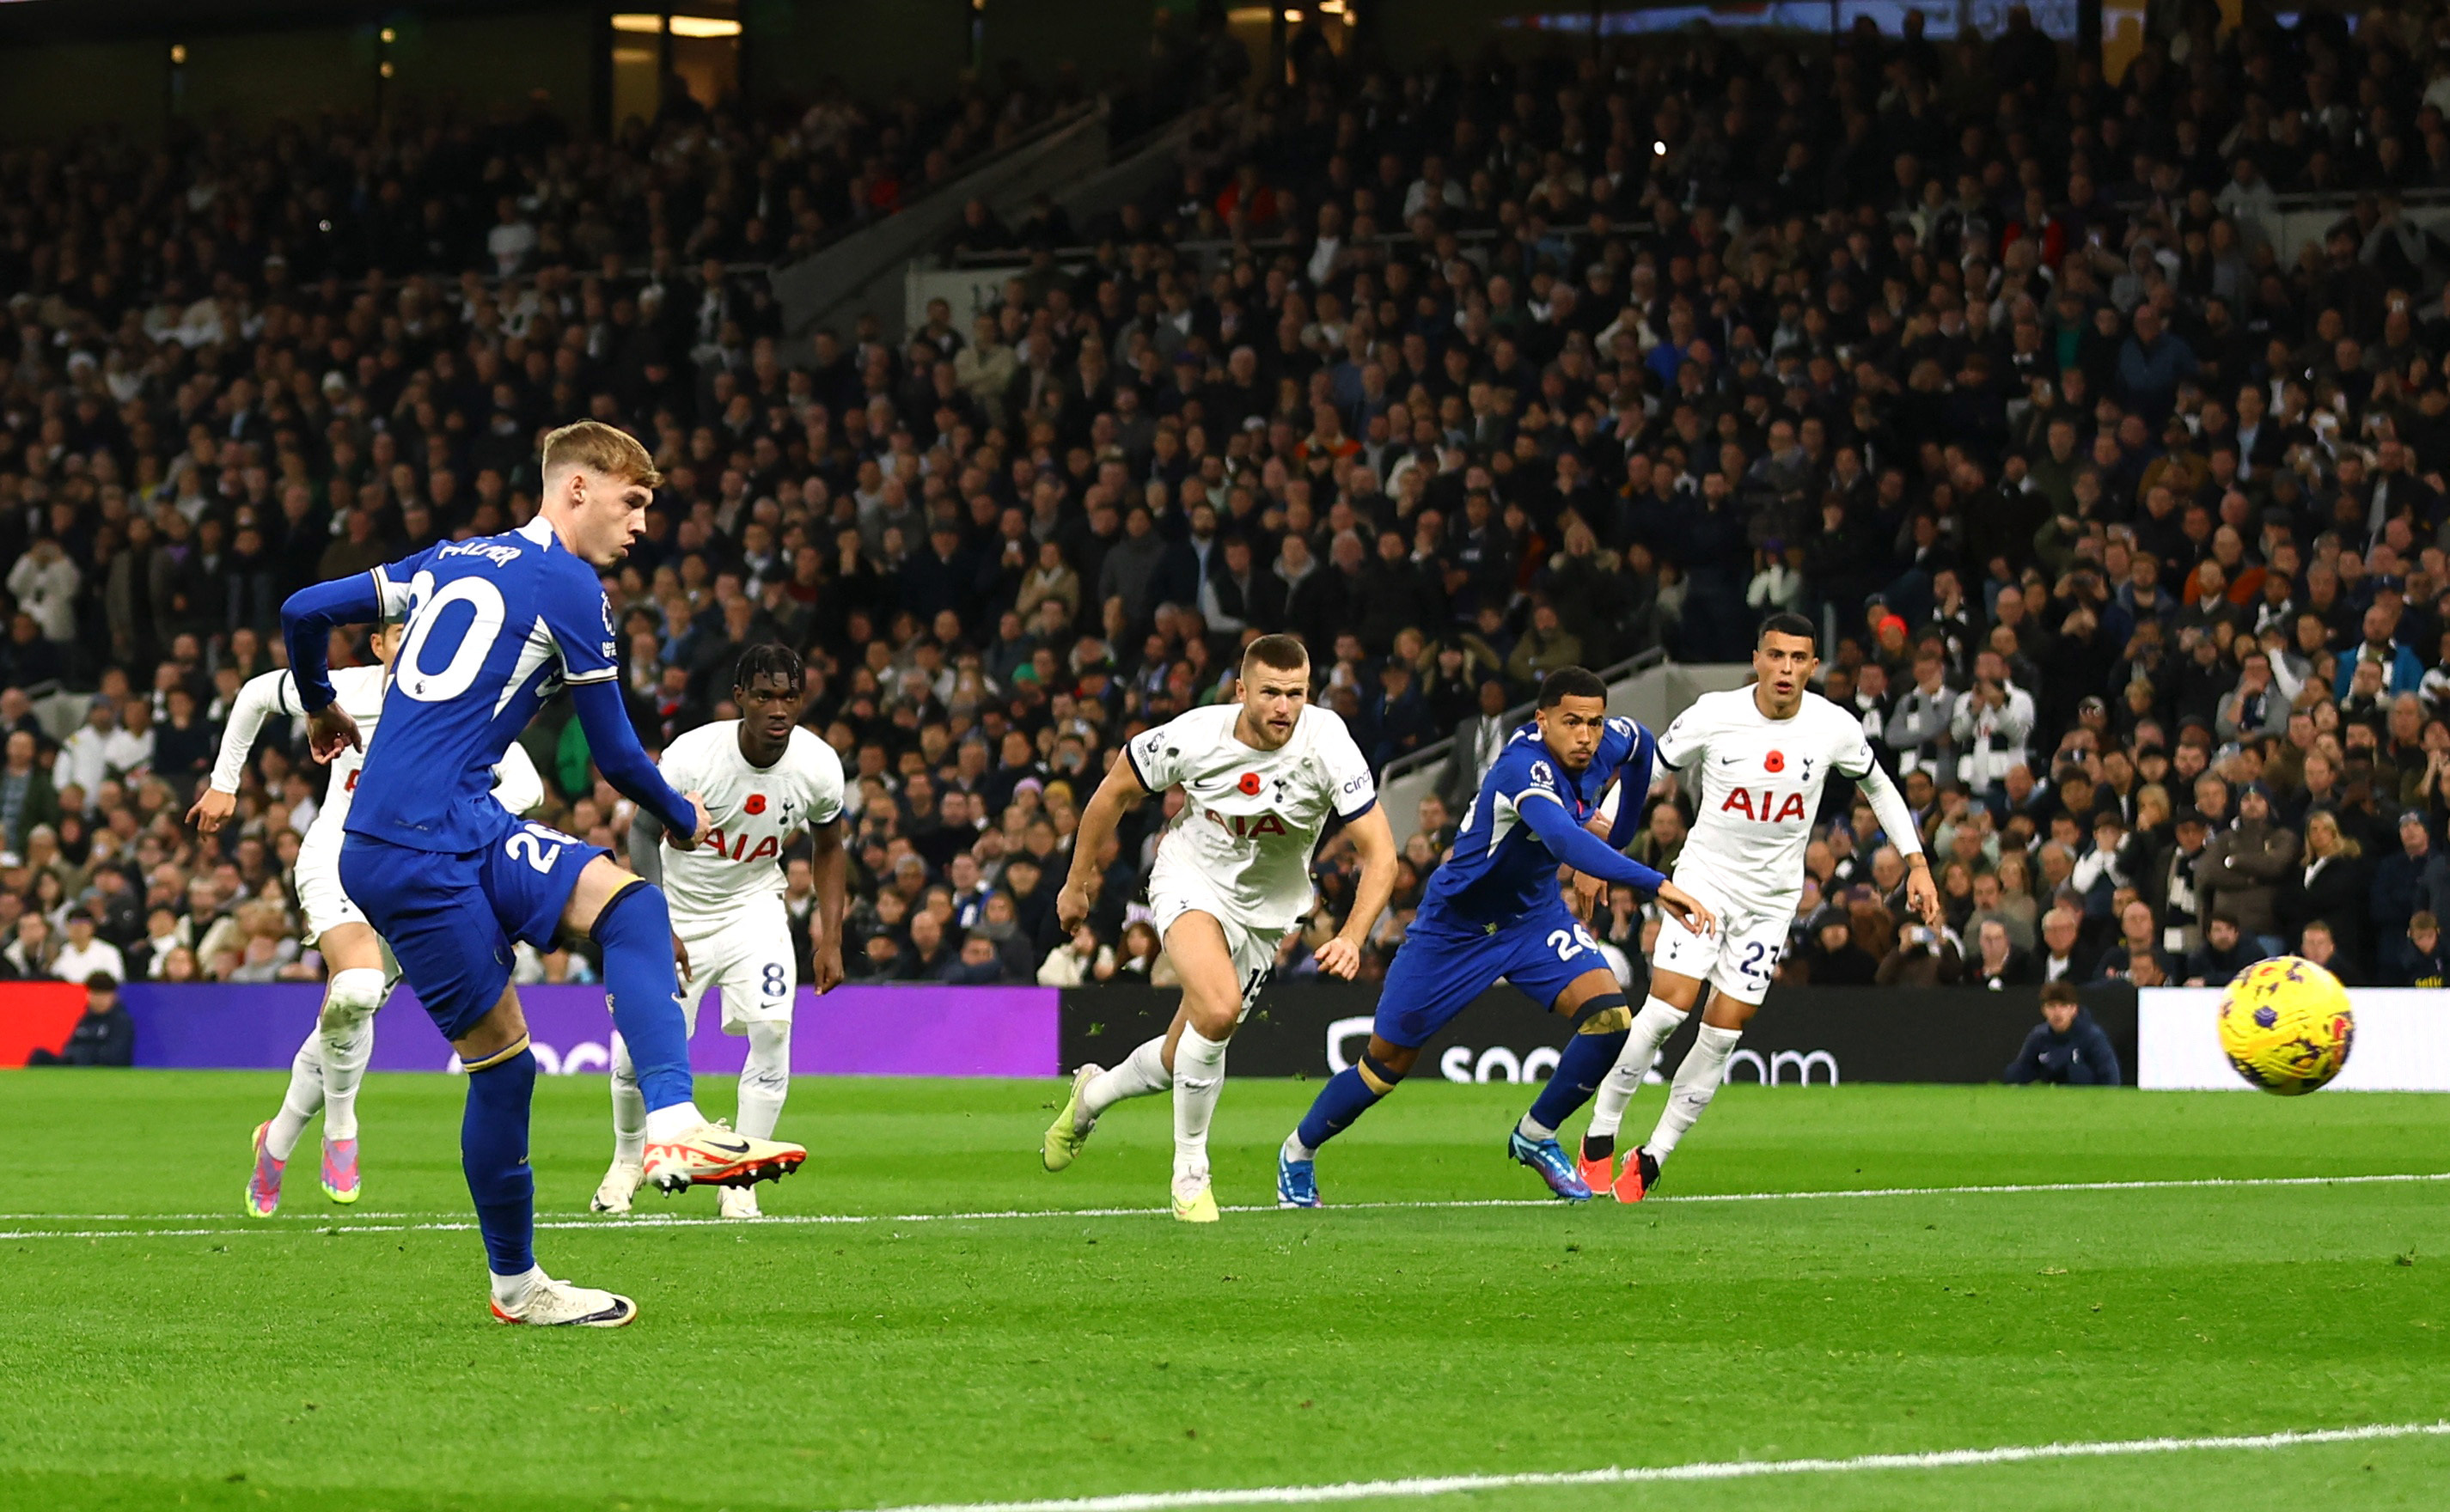 Tottenham Hotspur 1-4 Chelsea, Premier League: Post-match reaction